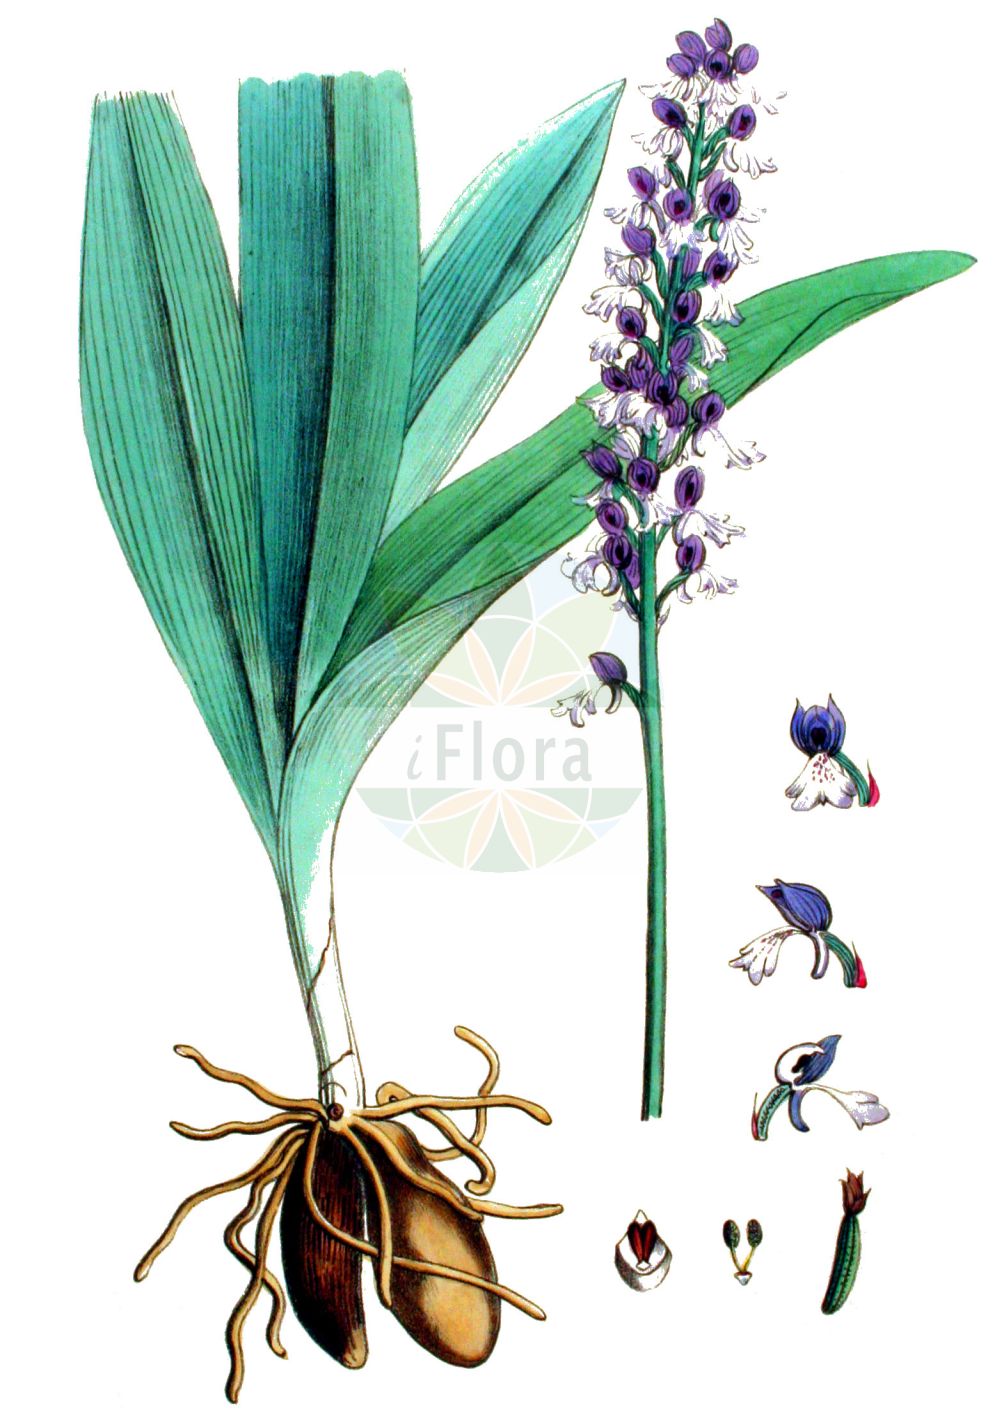 Historische Abbildung von Orchis purpurea (Purpur-Knabenkraut - Lady Orchid). Das Bild zeigt Blatt, Bluete, Frucht und Same. ---- Historical Drawing of Orchis purpurea (Purpur-Knabenkraut - Lady Orchid). The image is showing leaf, flower, fruit and seed.(Orchis purpurea,Purpur-Knabenkraut,Lady Orchid,Orchis purpurea,Purpur-Knabenkraut,Braunrotes Knabenkraut,Lady Orchid,Orchis,Knabenkraut,Orchidaceae,Knabenkrautgewächse,Orchid family,Blatt,Bluete,Frucht,Same,leaf,flower,fruit,seed,Kops (1800-1934))